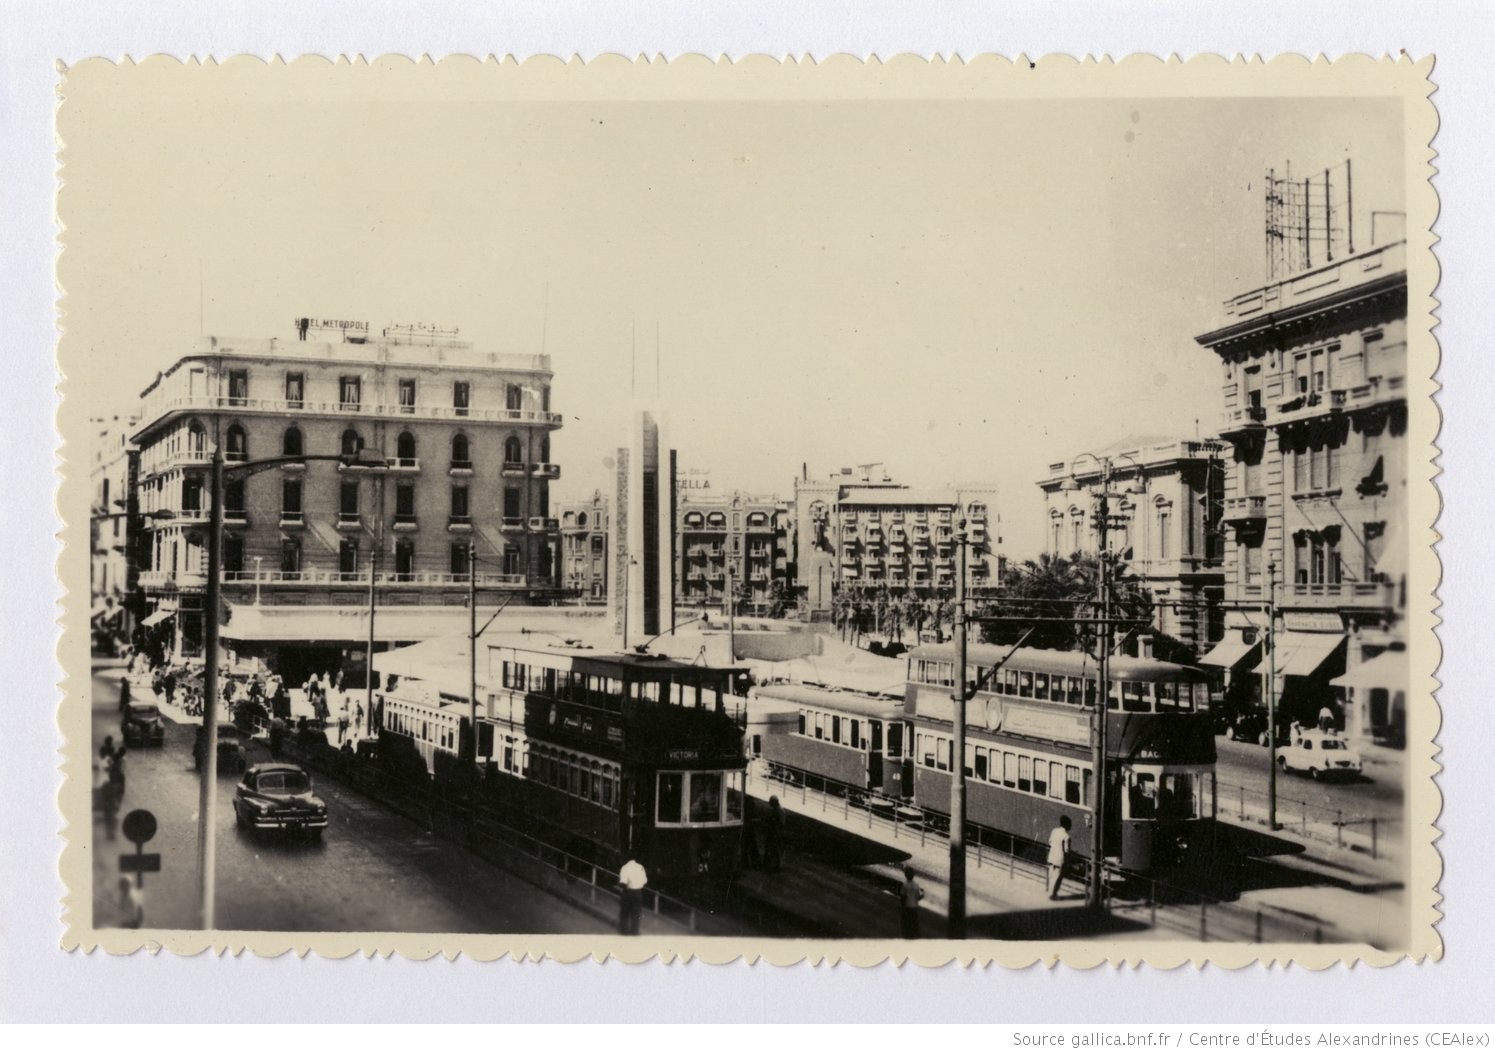 Carte postale d’archives illustrant la gare de Ramleh, dans le centre d’Alexandrie, datant des années 1950. La place ressemble encore à cela aujourd’hui (gallica.bnf.fr/Centre d'Etudes Alexandrines)